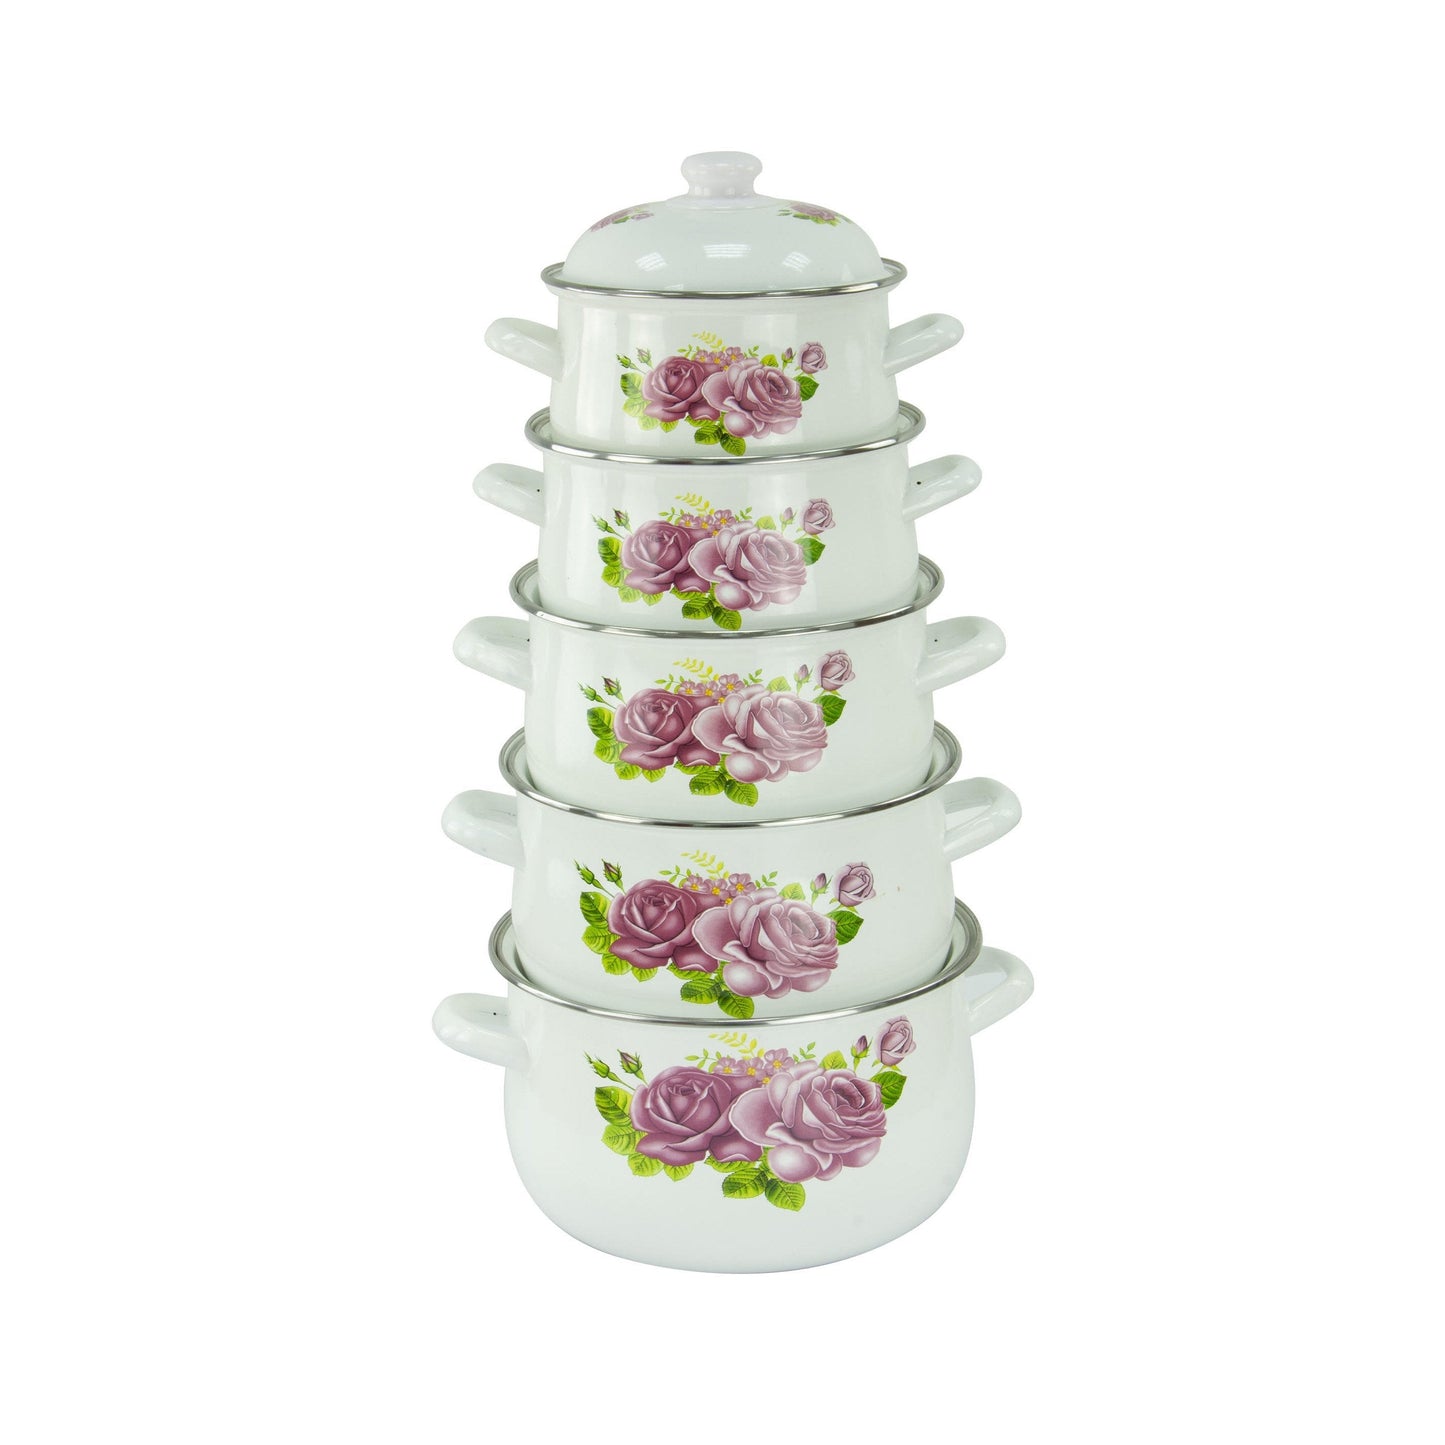 Enamel Cooking Pot Set of 5 Floral Design Assorted Designs 773D / 9200 (Big Parcel Rate)